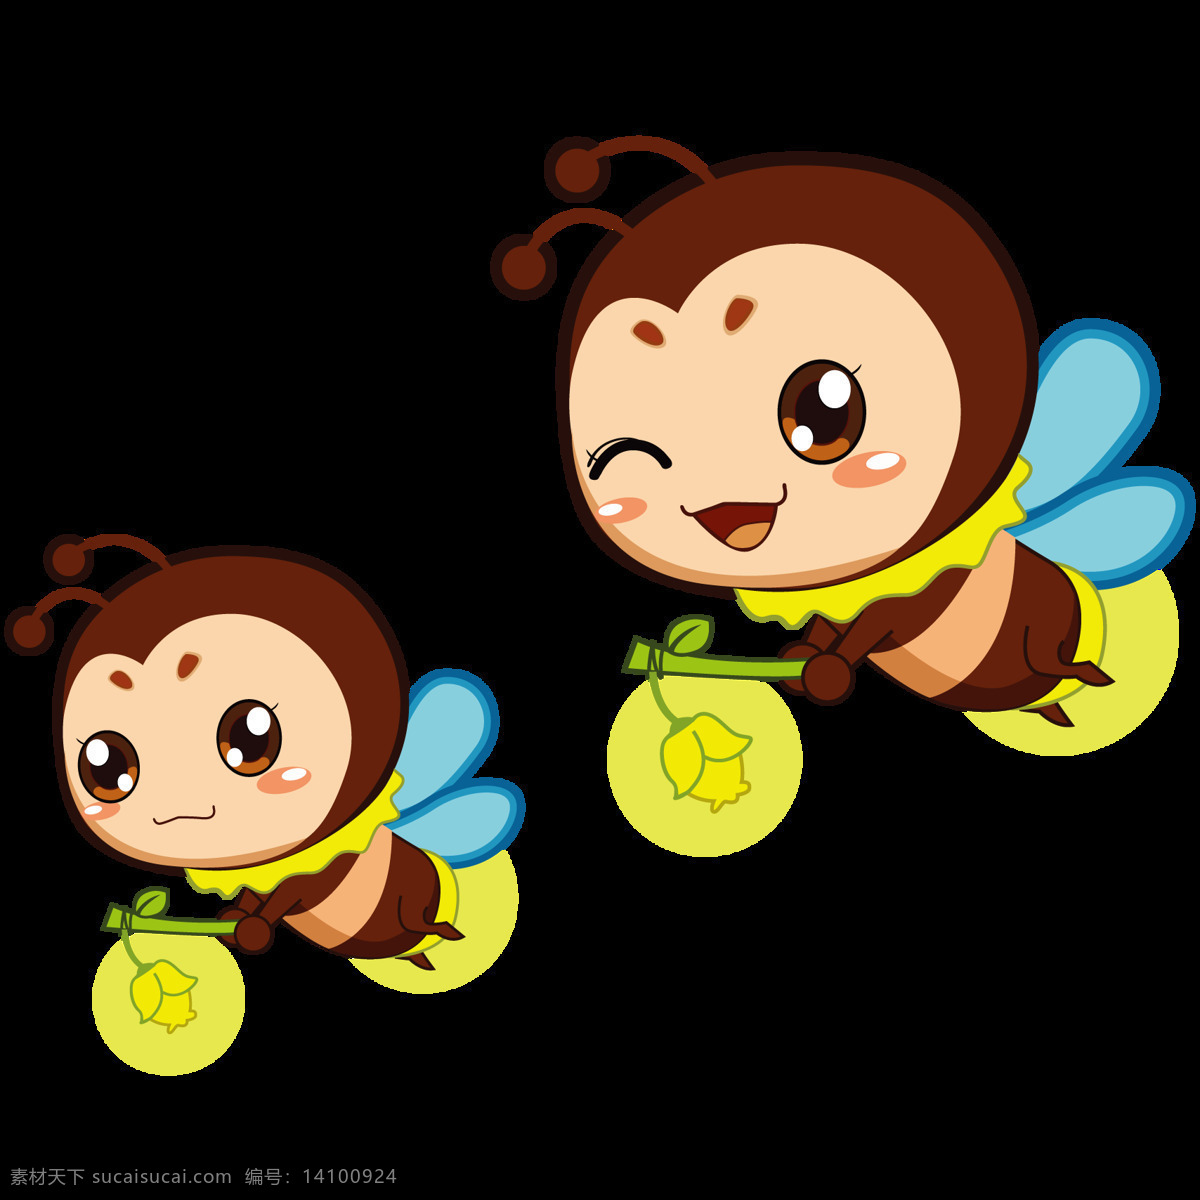 卡通 小 蜜蜂 小蜜蜂 png素材 灯笼 卡通昆虫 单个 元素 矢量 素